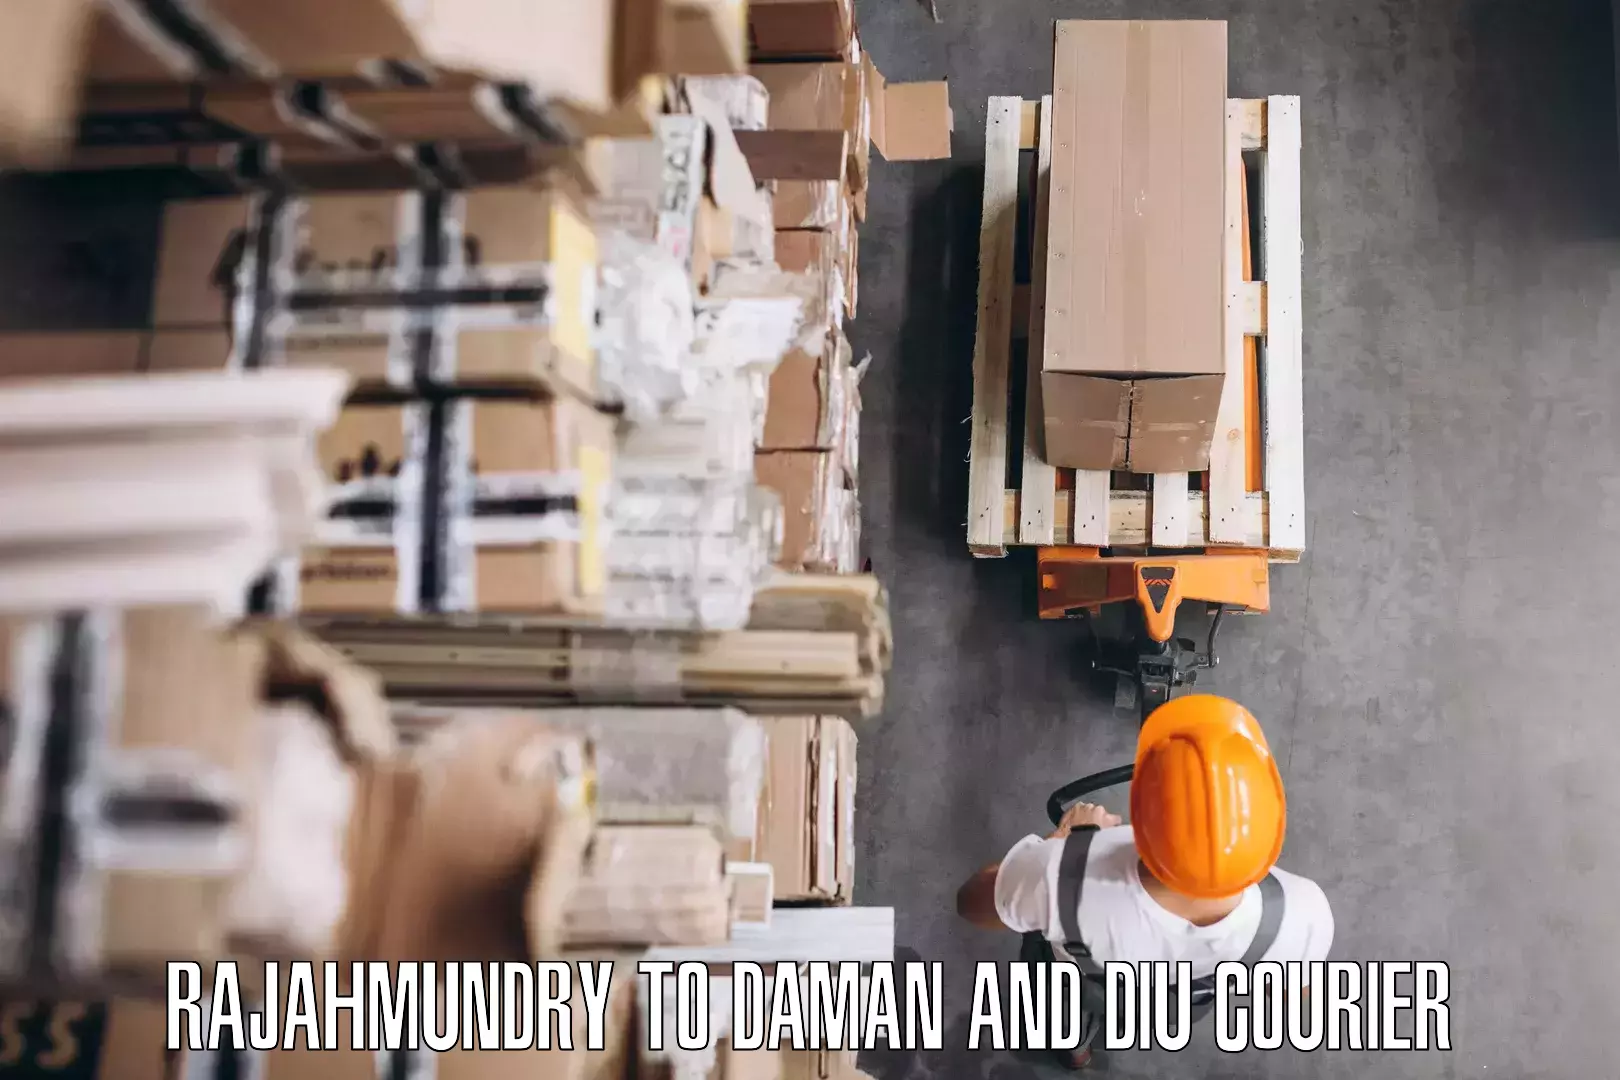 Expert goods movers Rajahmundry to Daman and Diu